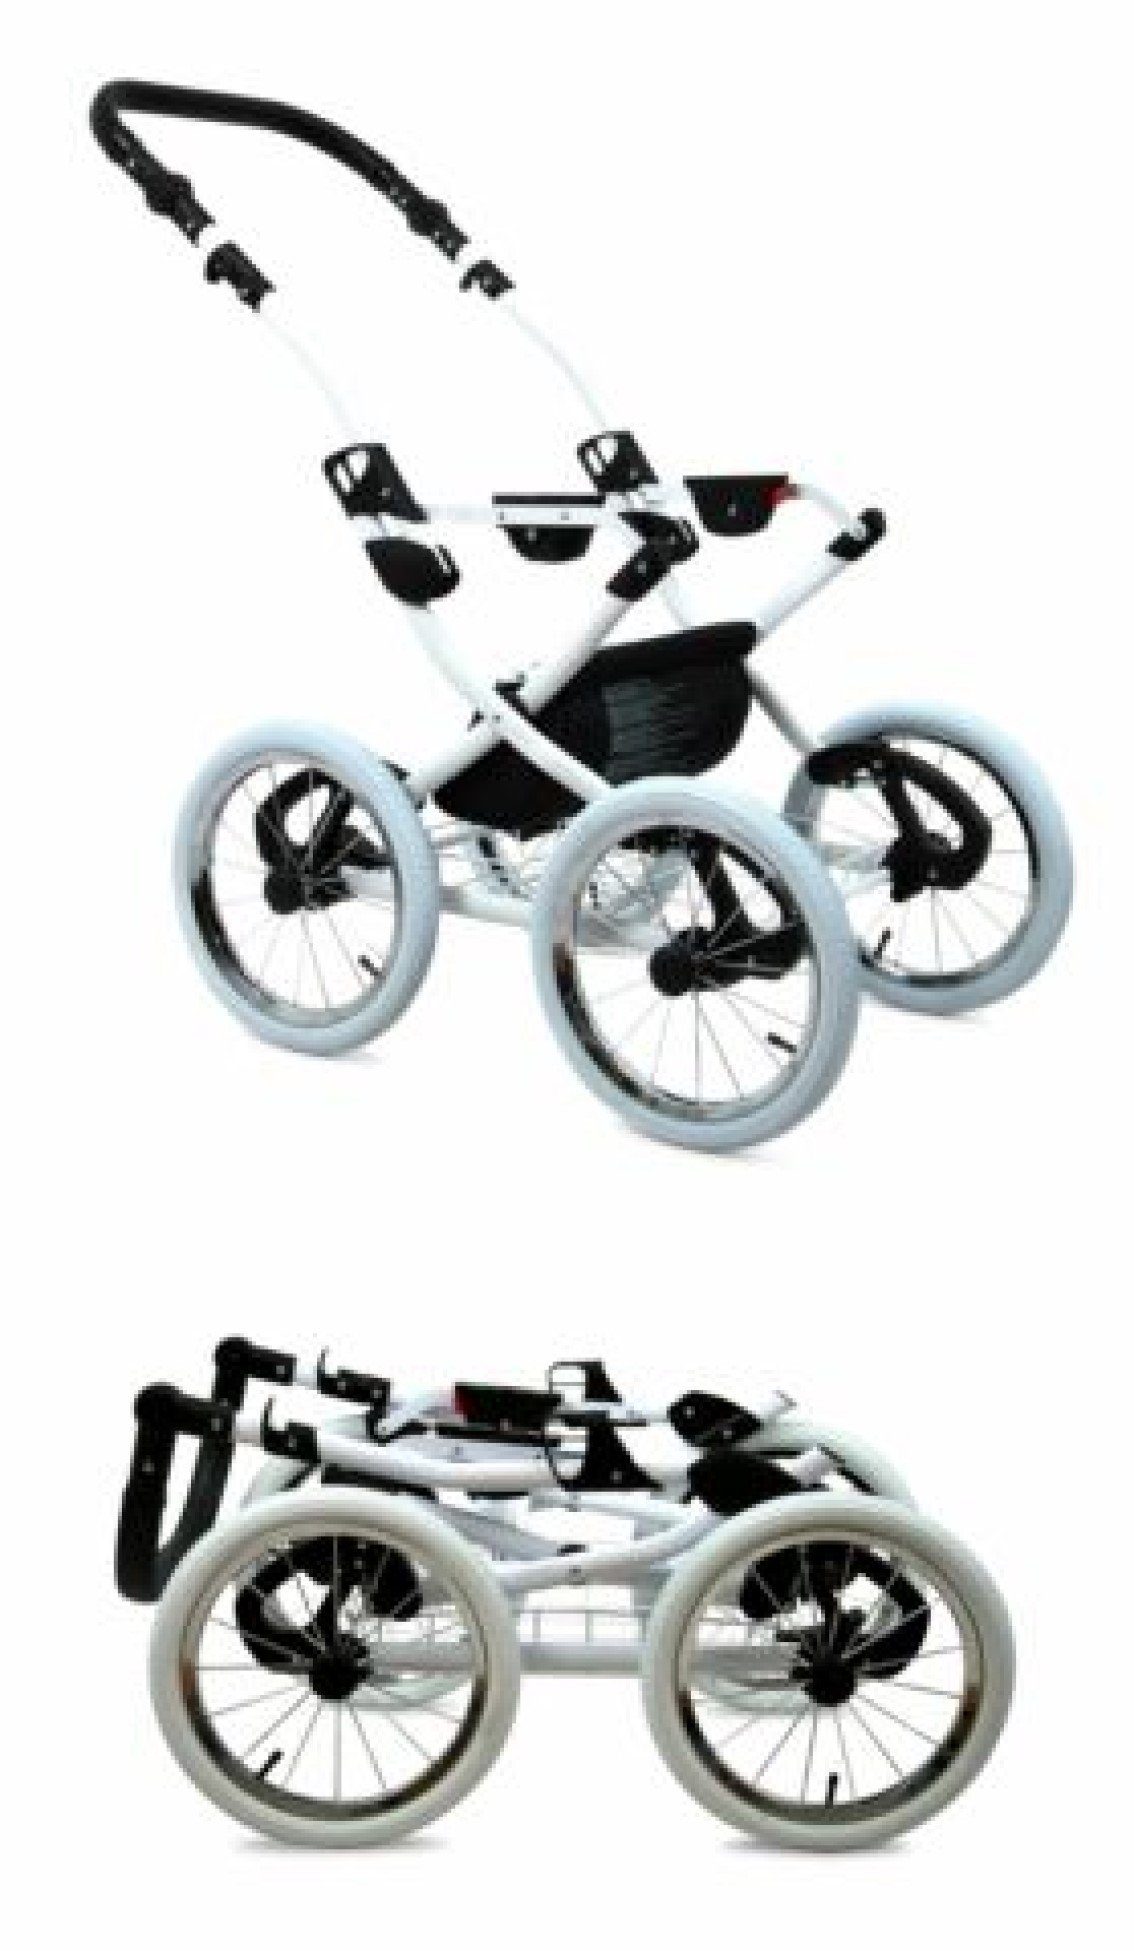 Kombi-Kinderwagen Isofix Baby mint Roe Kombikinderwagen Designer Kinderwagen 4in1 Neu pressiode